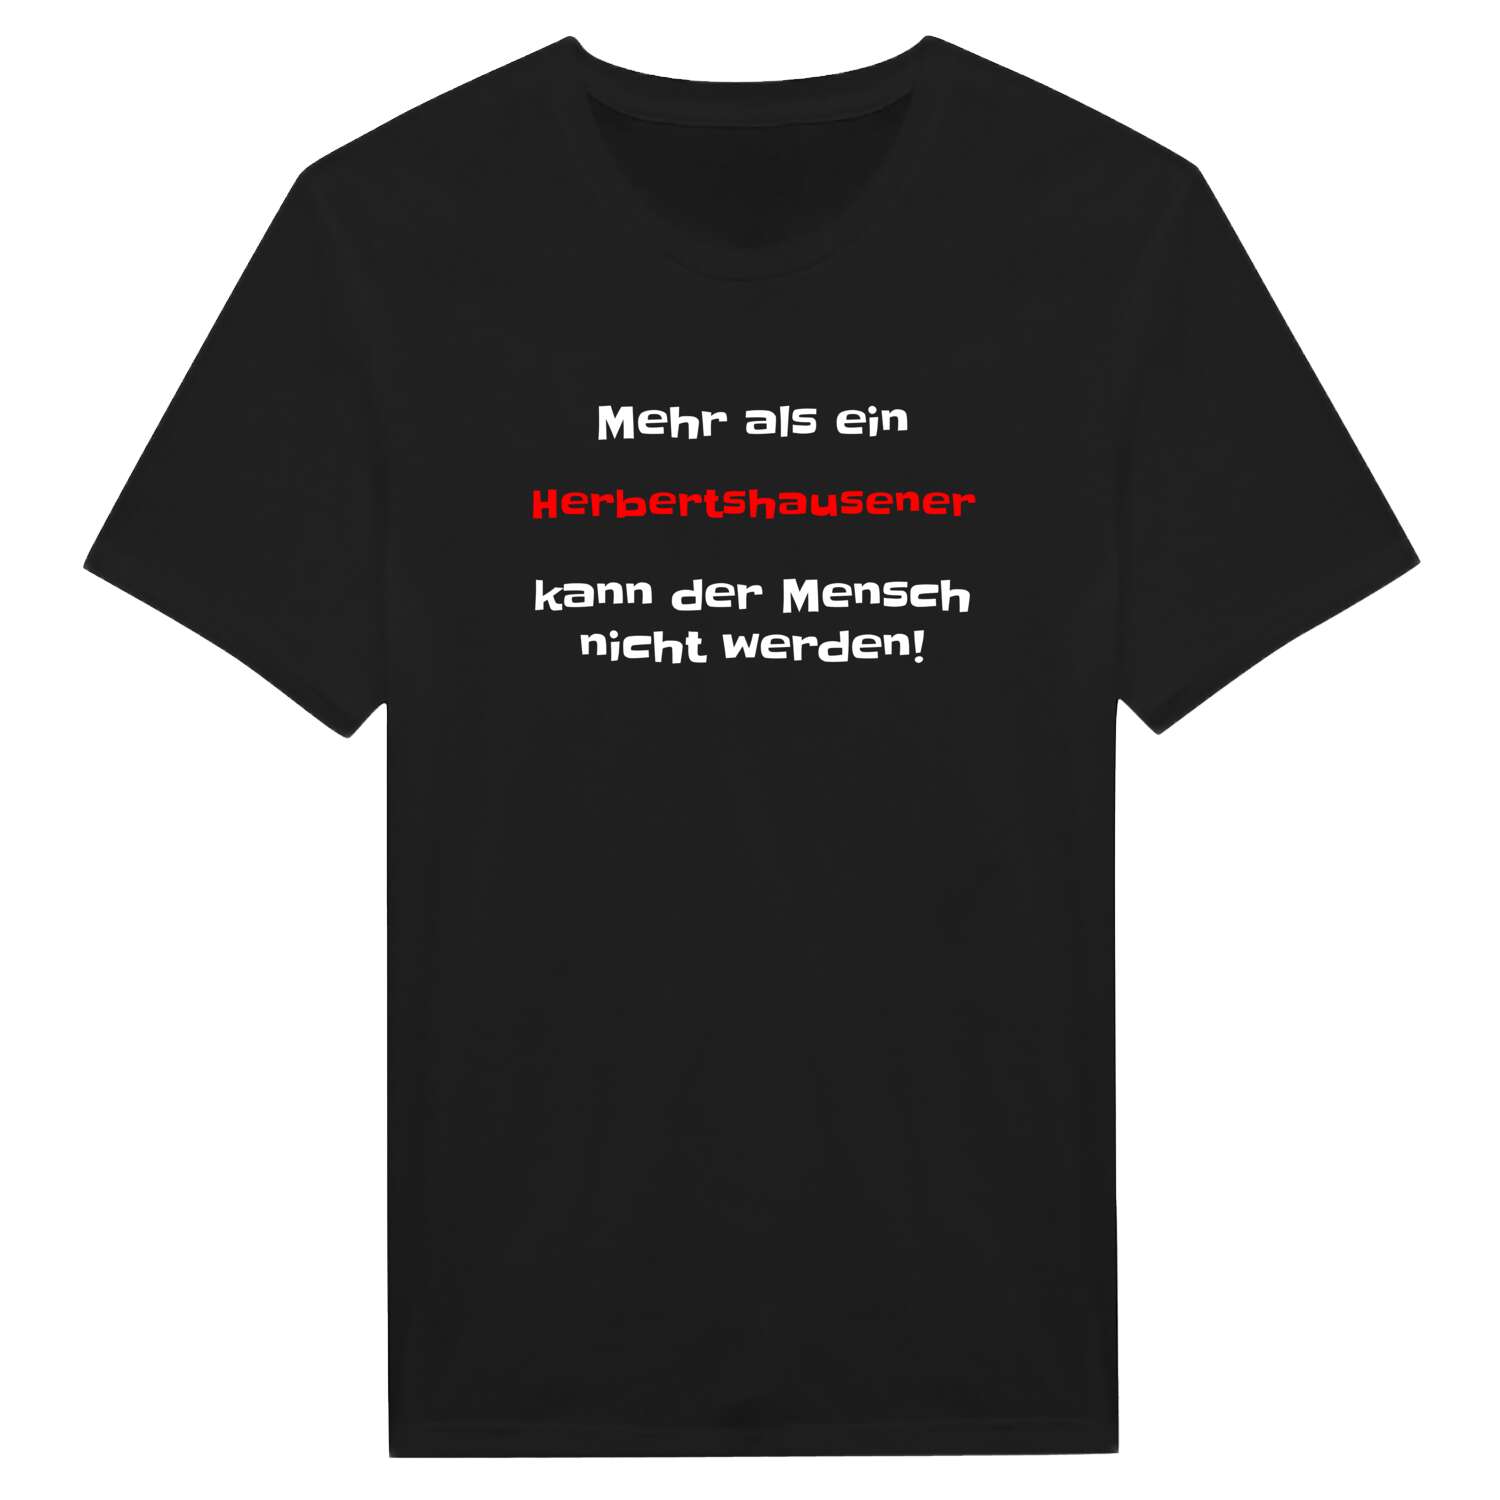 Herbertshausen T-Shirt »Mehr als ein«